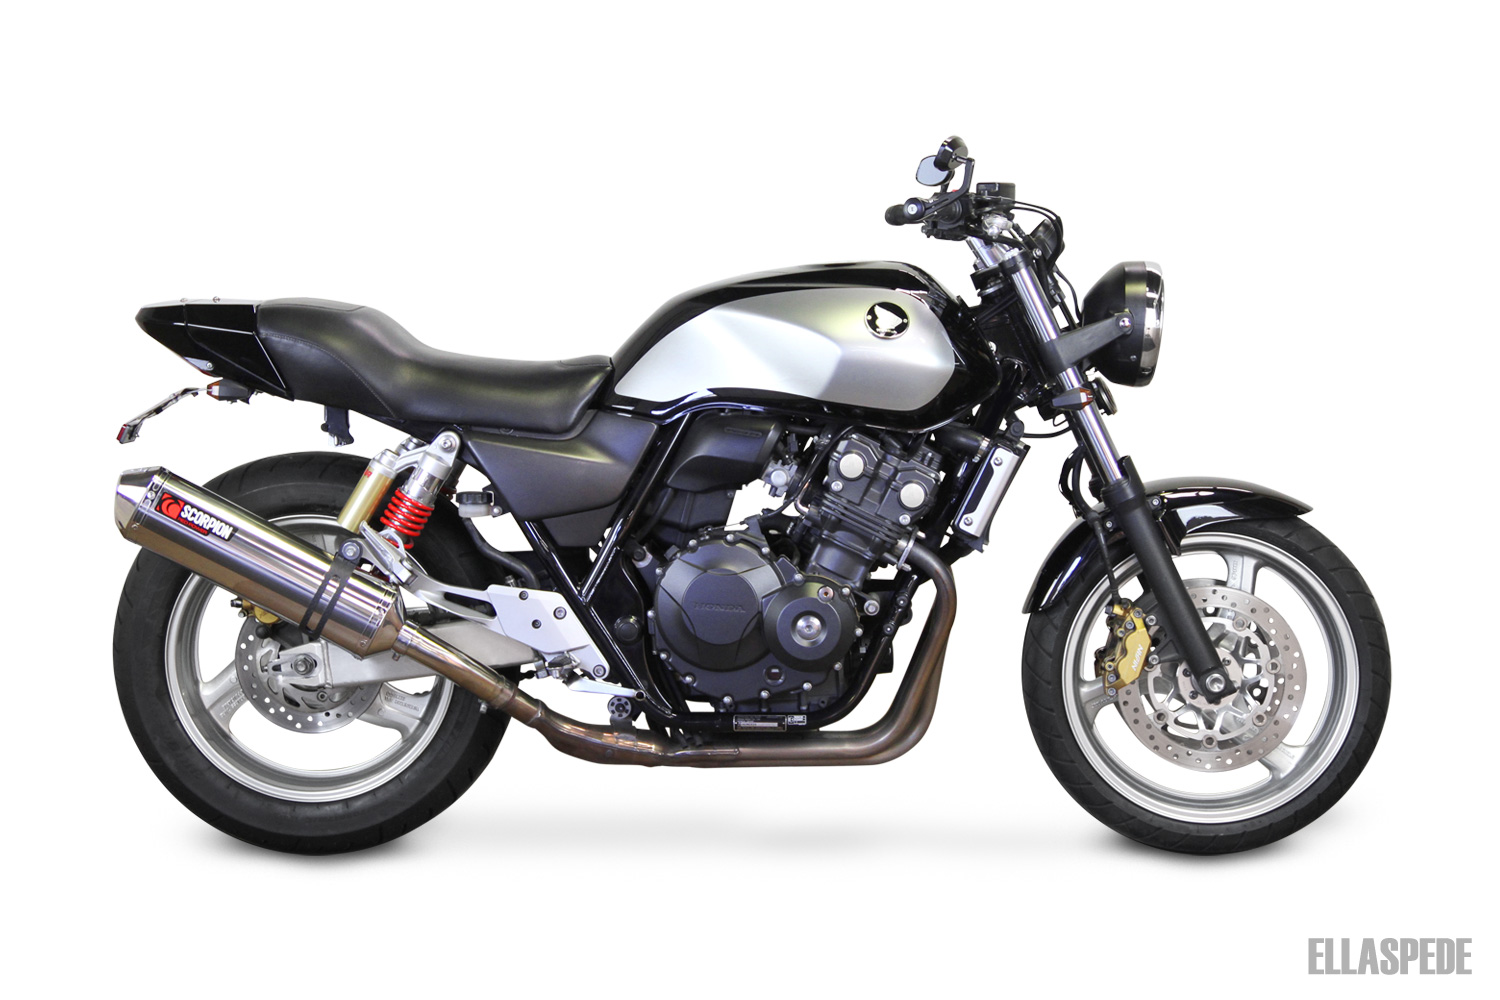 EB087 – 2011 Honda CB400 main image